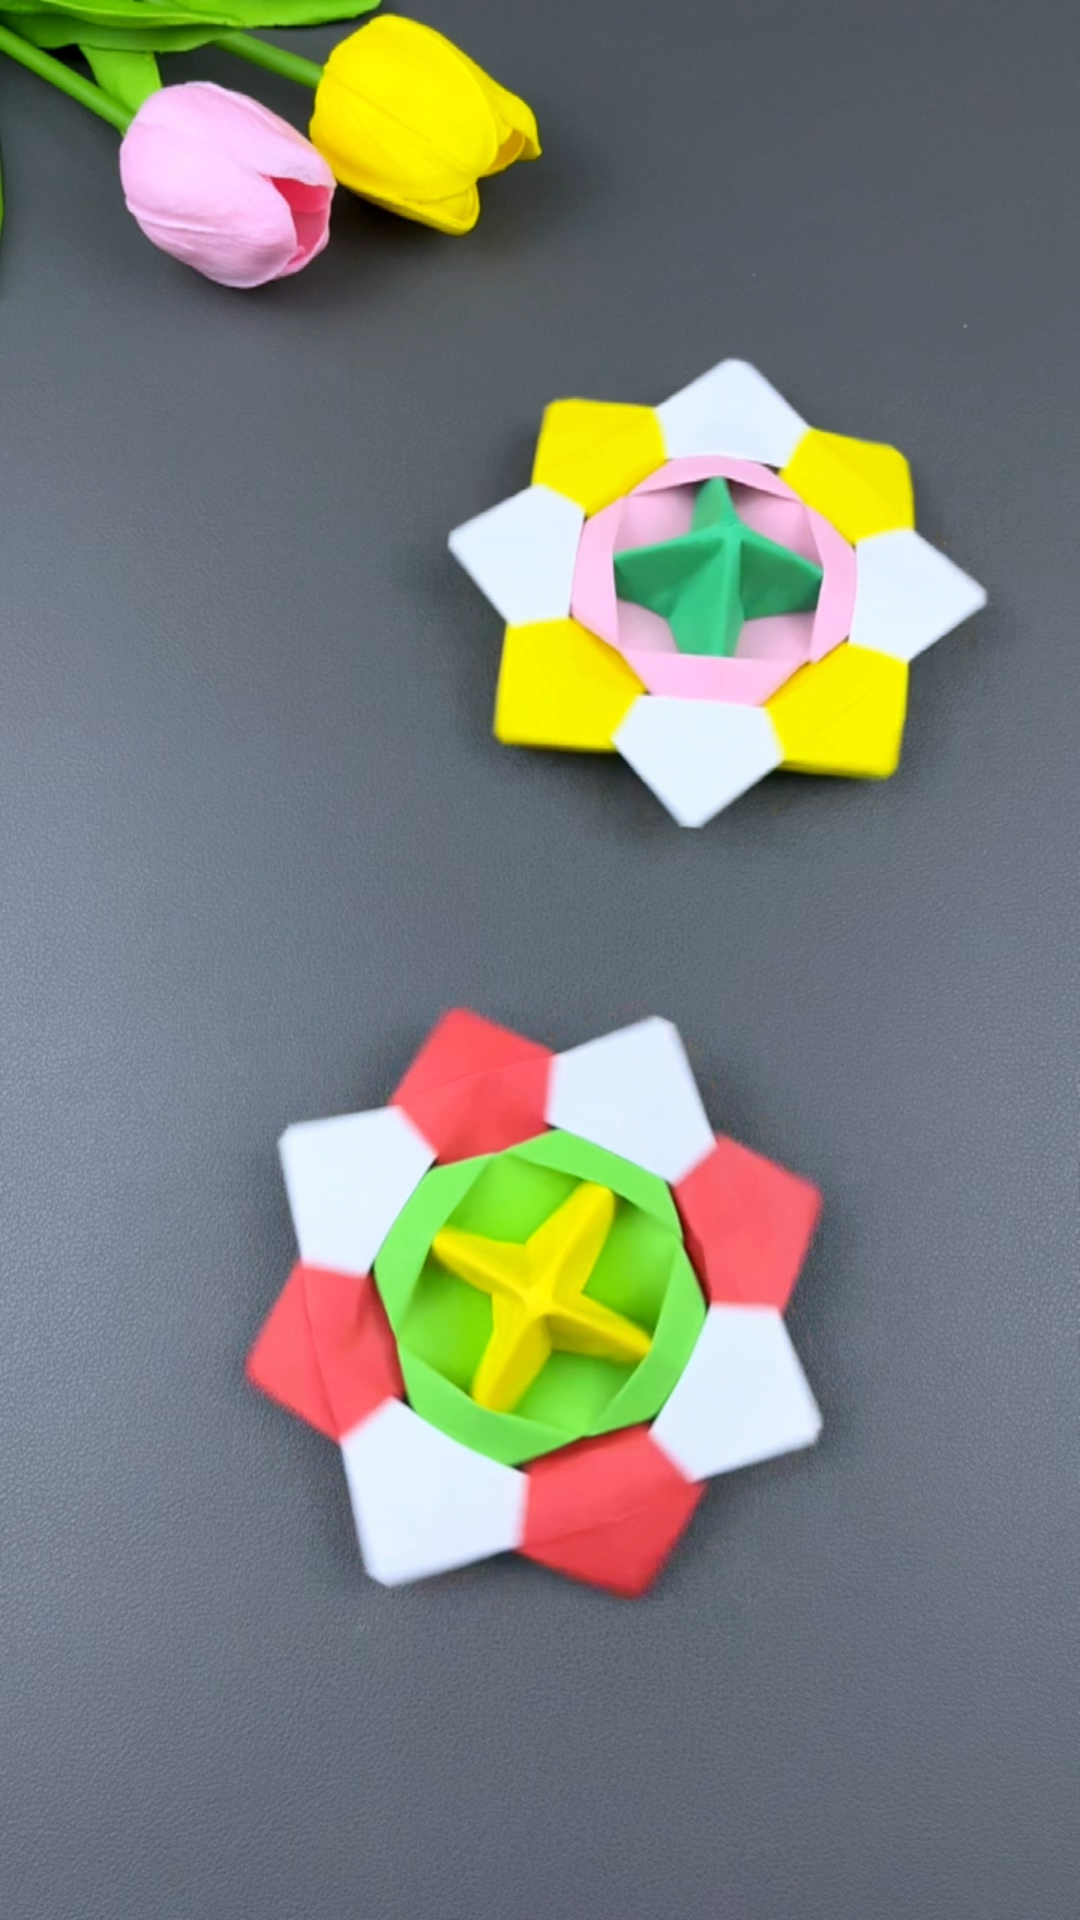 教你用三张纸做一个好玩的折纸陀螺,快和孩子一起玩起来吧!